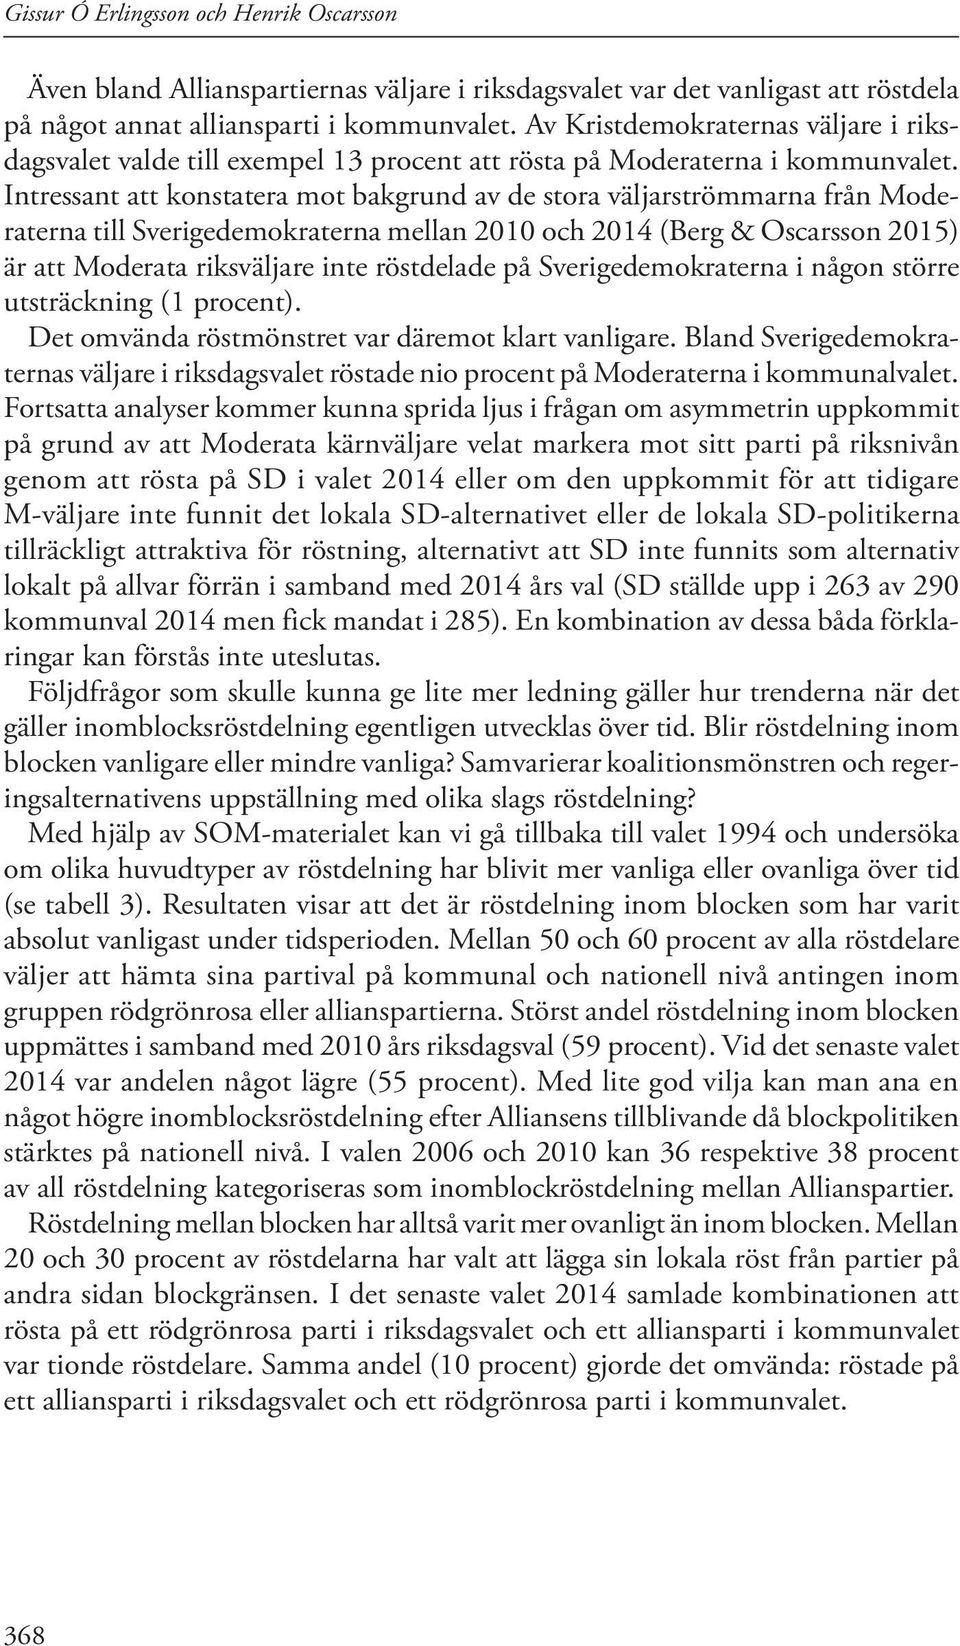 Intressant att konstatera mot bakgrund av de stora väljarströmmarna från Moderaterna till Sverigedemokraterna mellan 2010 och 2014 (Berg & Oscarsson 2015) är att Moderata riksväljare inte röstdelade